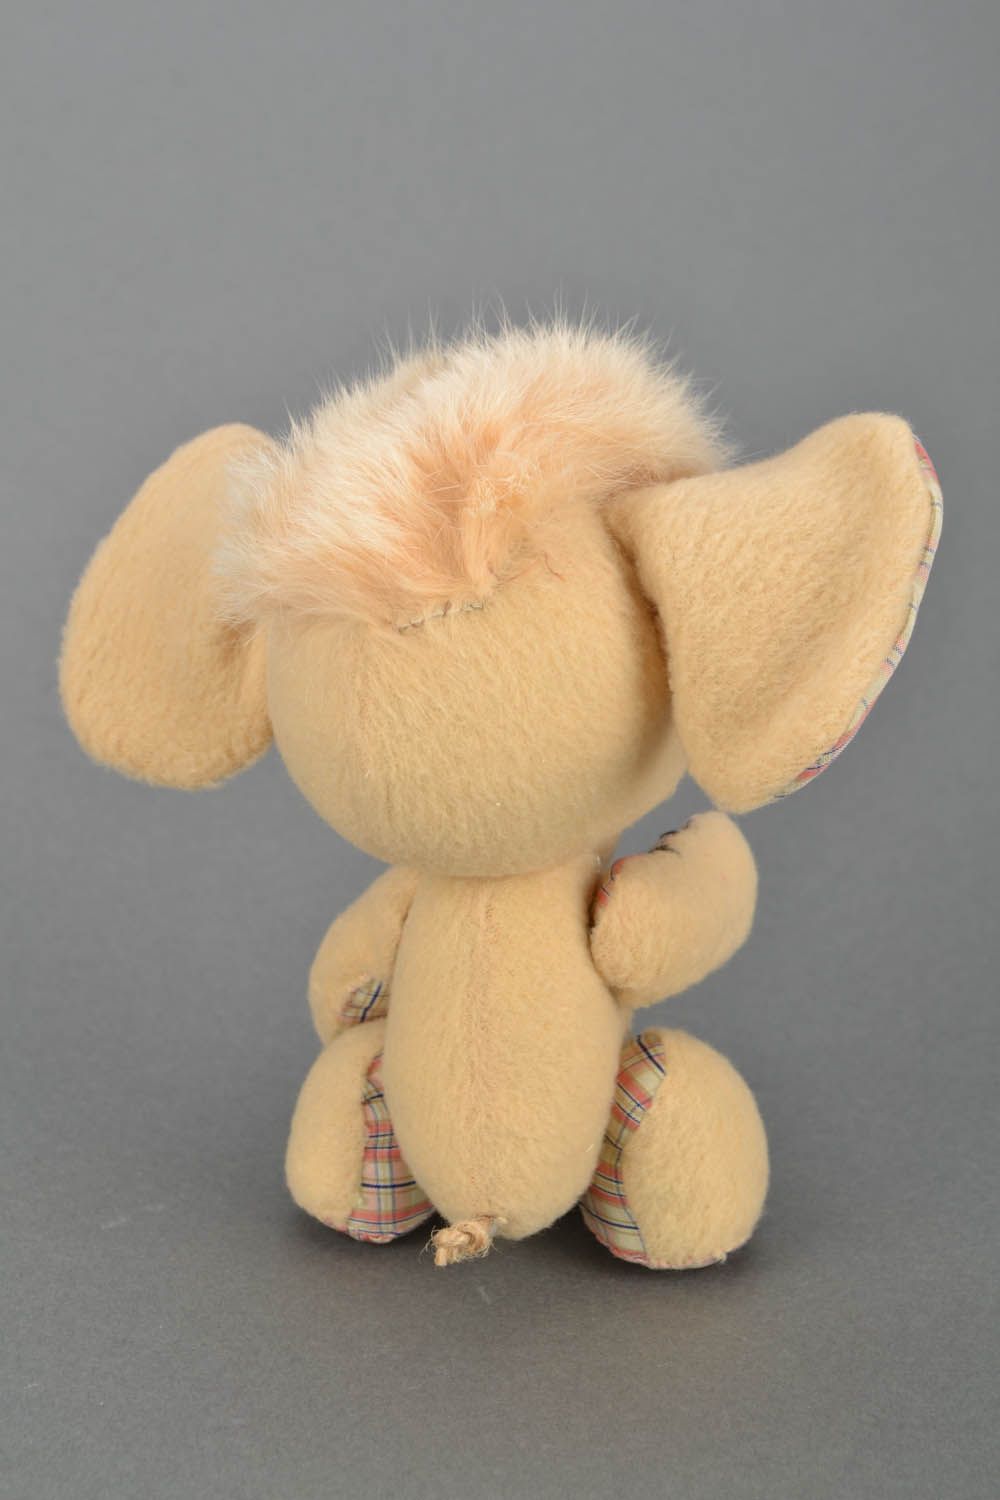 Soft elephant toy photo 5